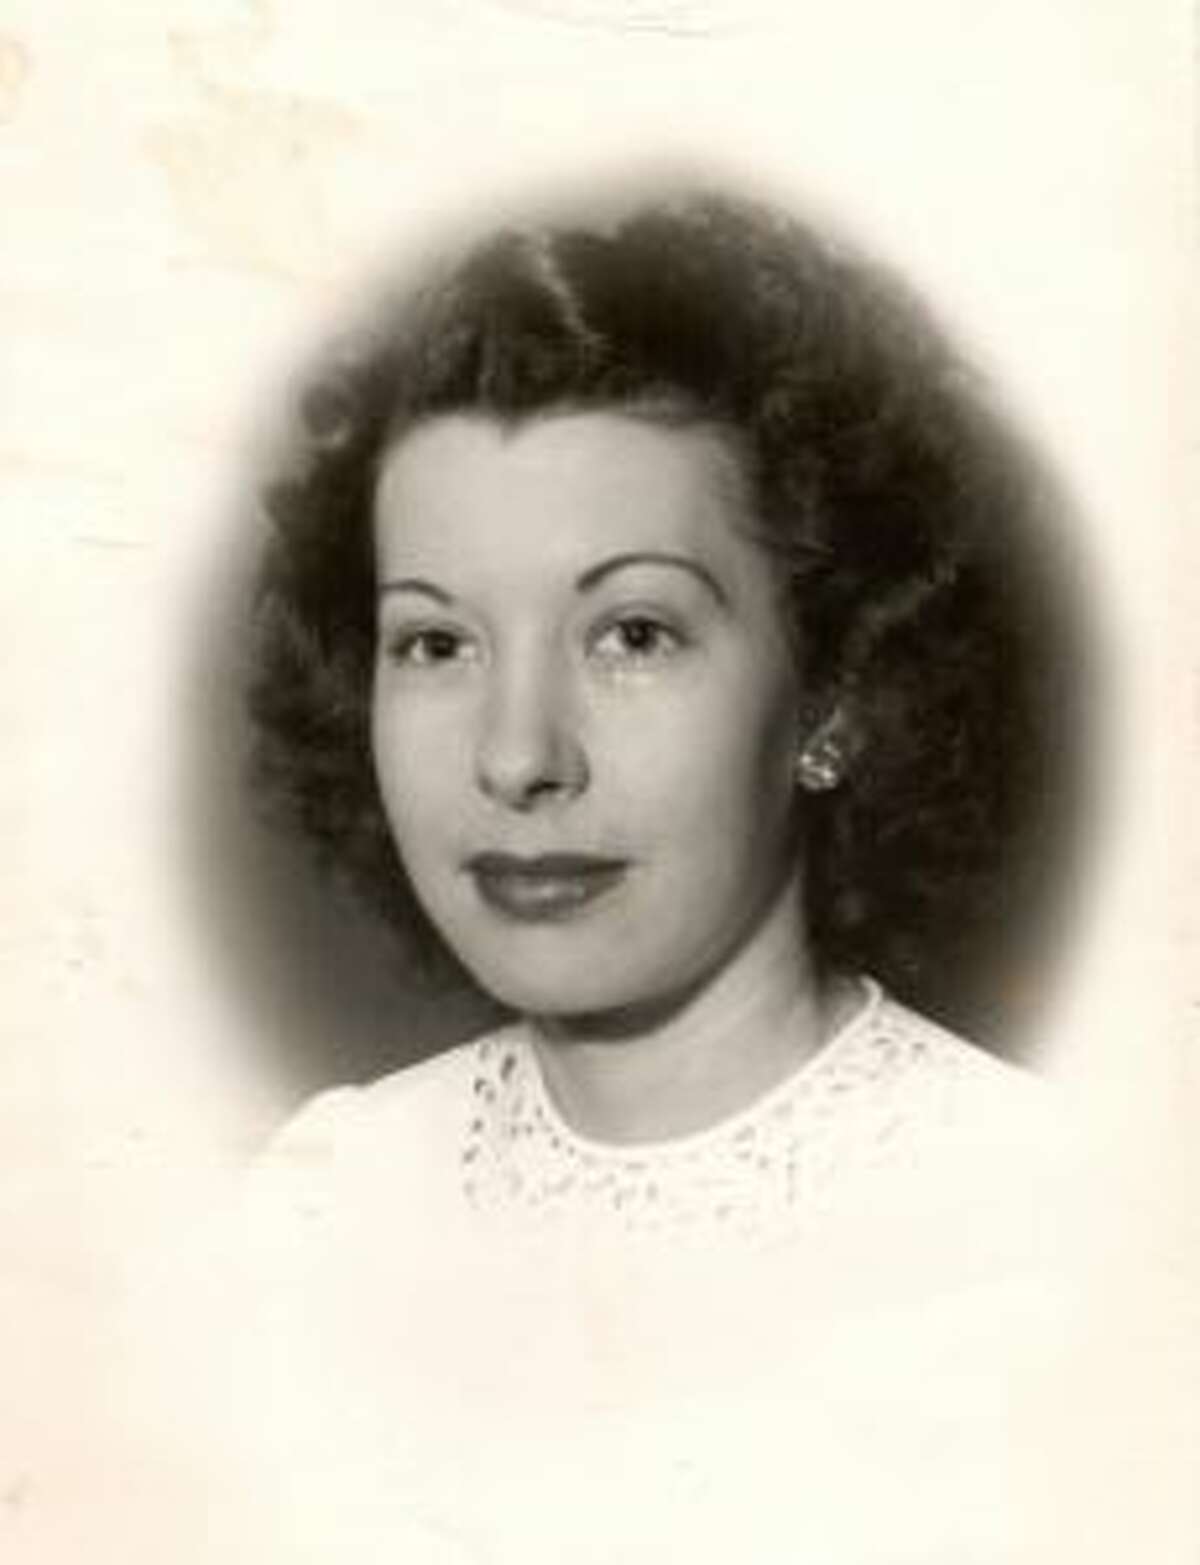 Gloria M. Miller